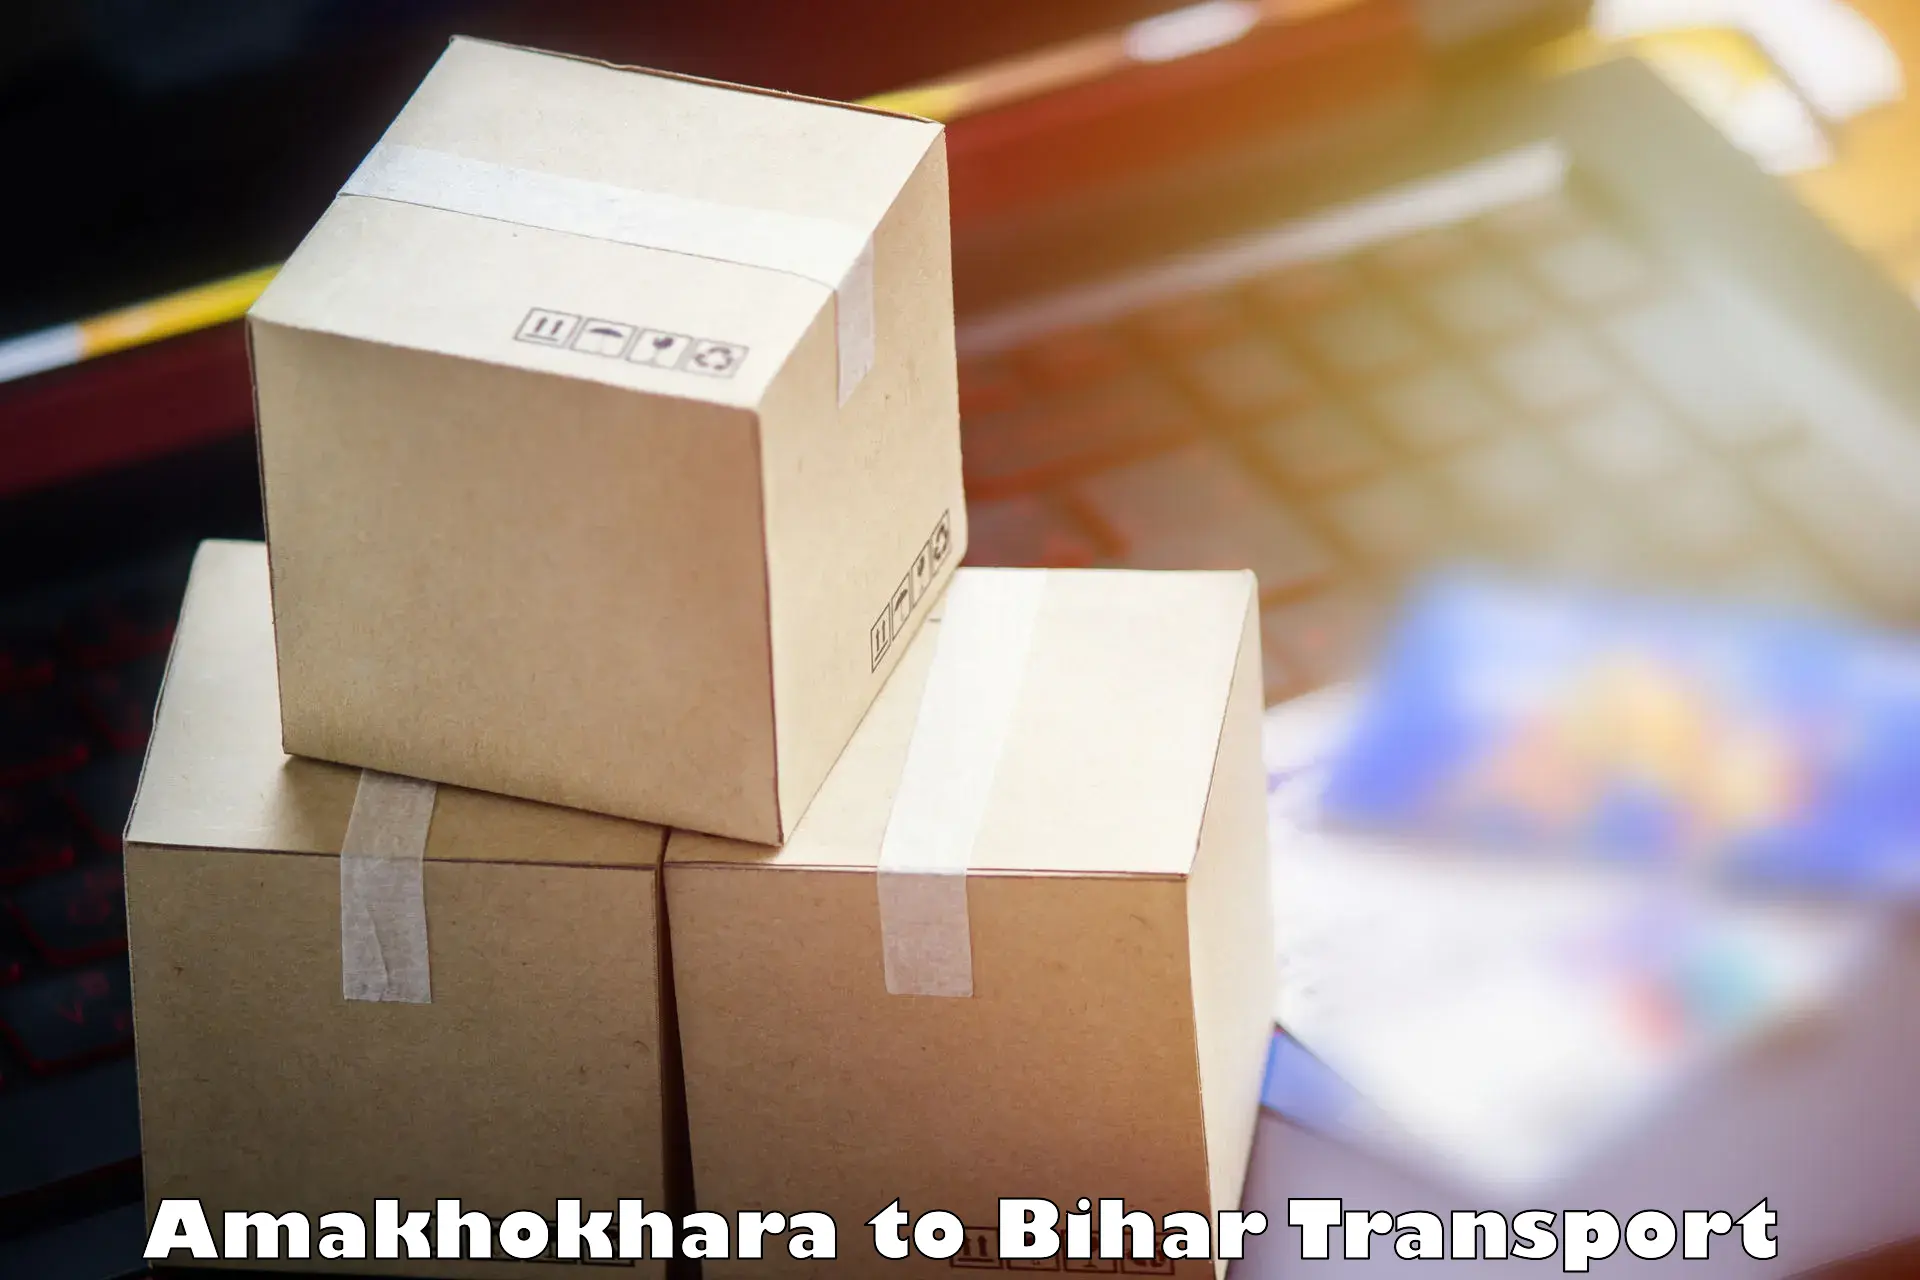 Domestic goods transportation services Amakhokhara to Tribeniganj